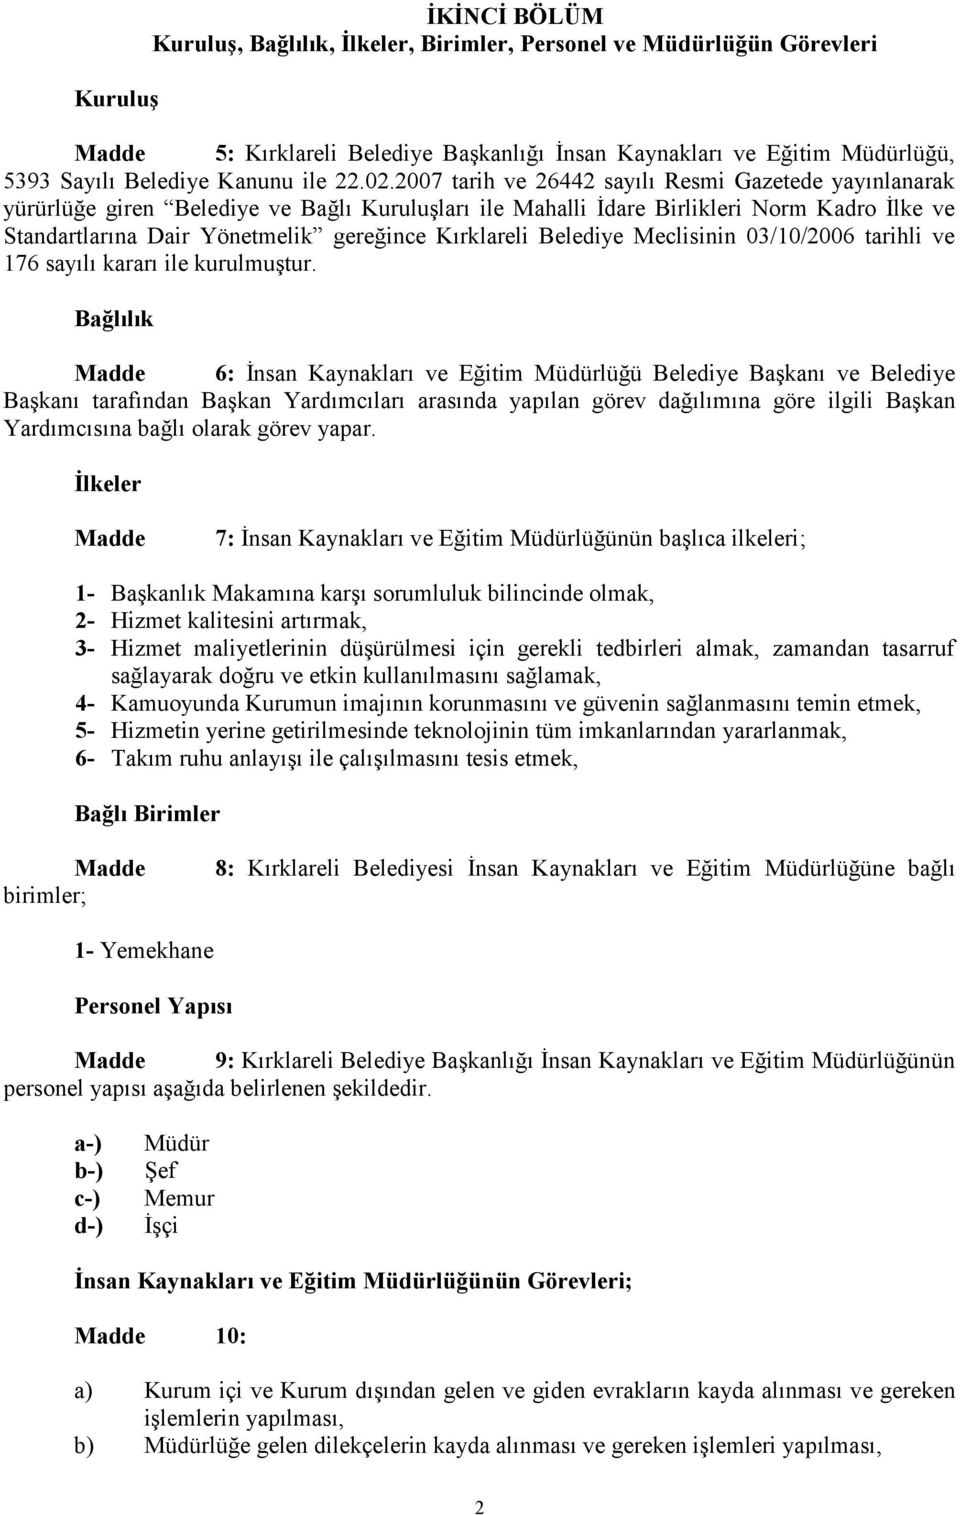 Kırklareli Belediye Meclisinin 03/10/2006 tarihli ve 176 sayılı kararı ile kurulmuştur.